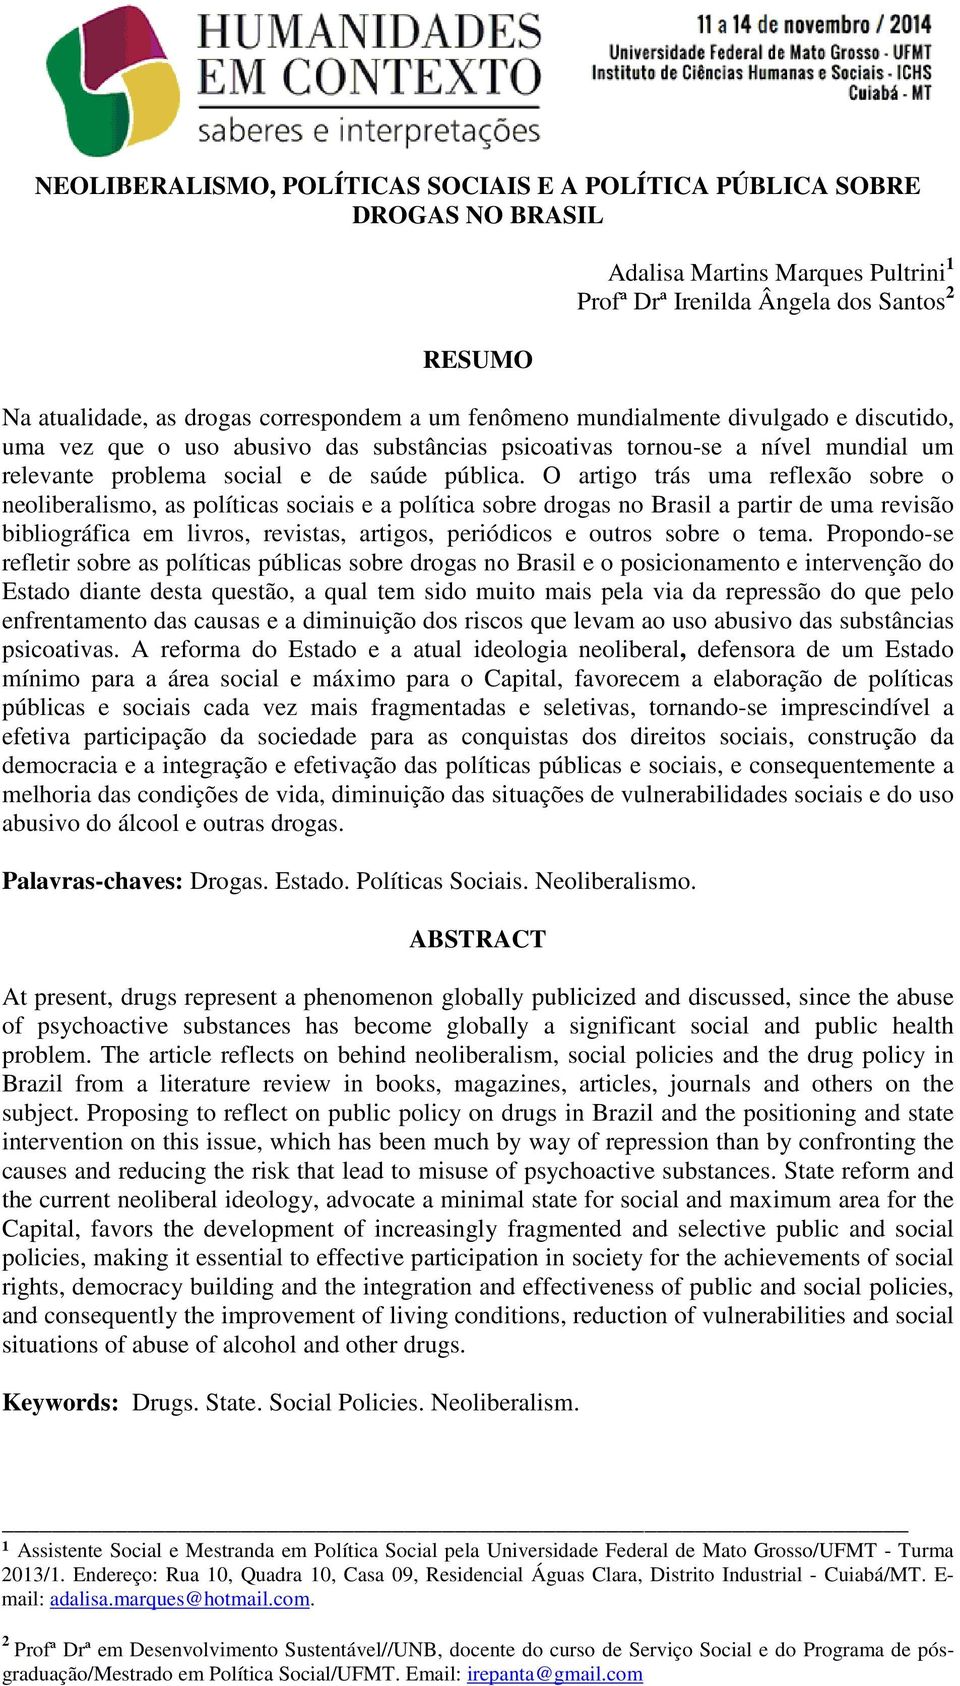 O artigo trás uma reflexão sobre o neoliberalismo, as políticas sociais e a política sobre drogas no Brasil a partir de uma revisão bibliográfica em livros, revistas, artigos, periódicos e outros